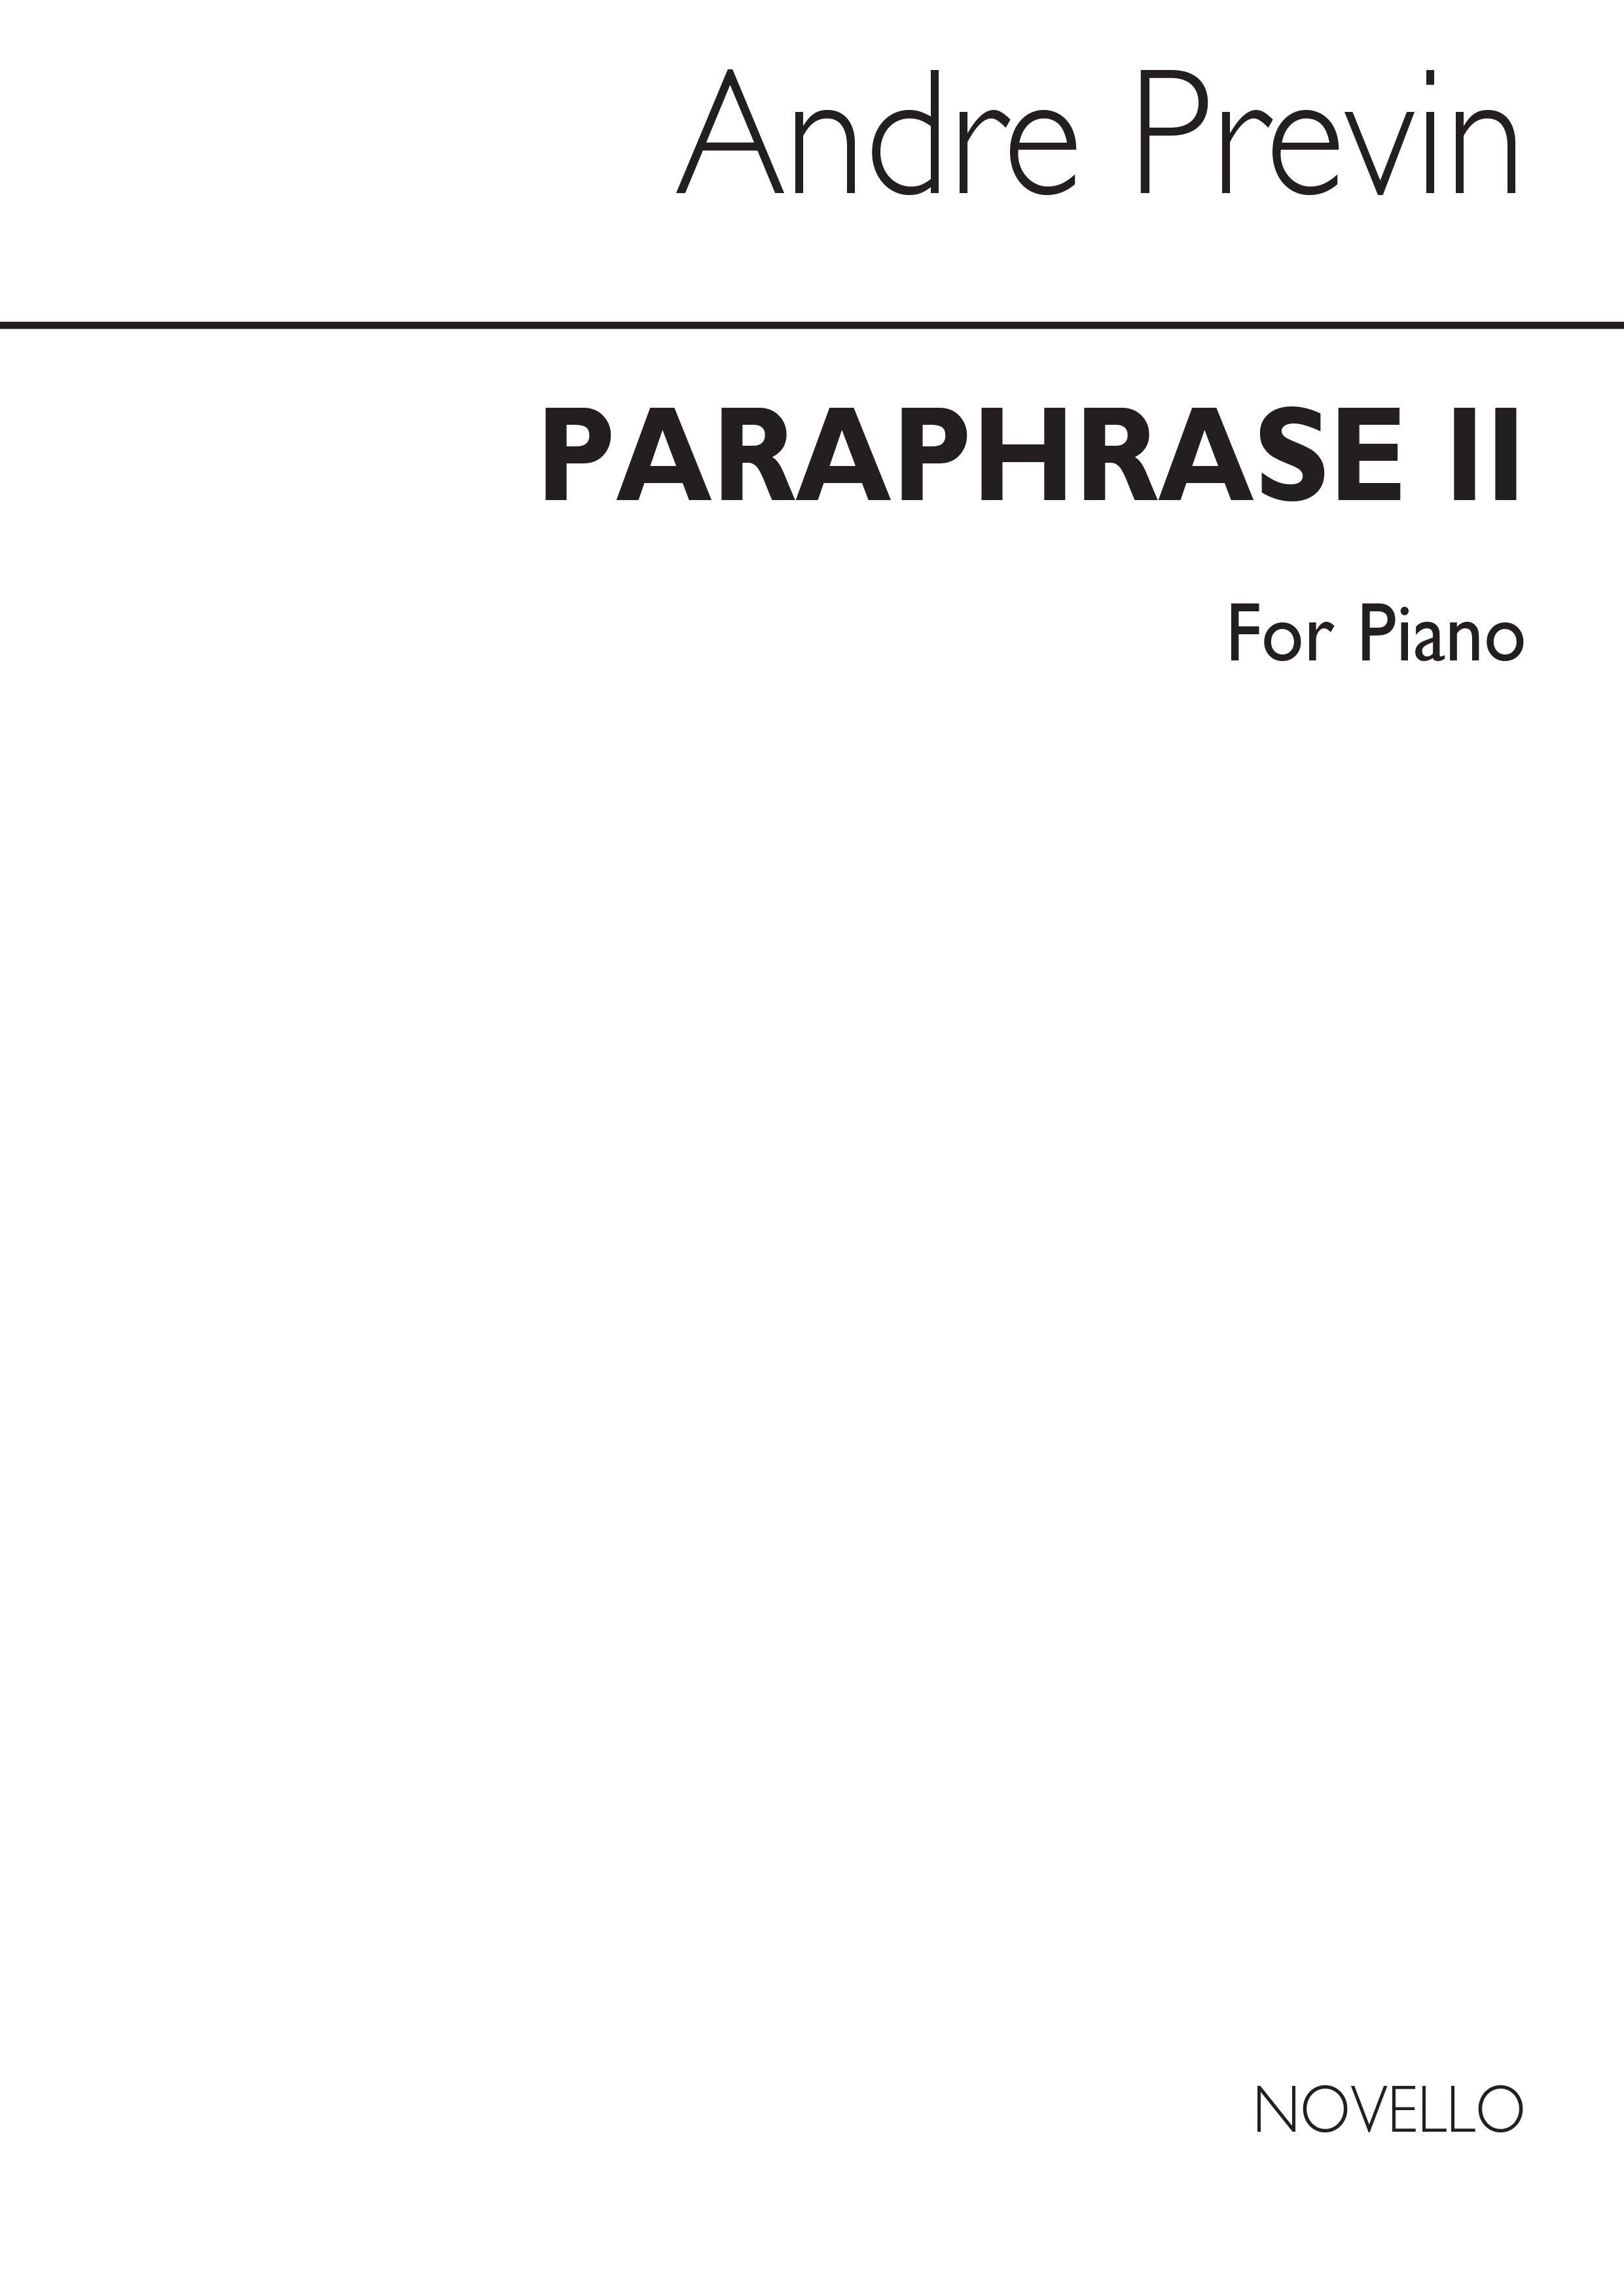 Previn: Paraphrase for Piano